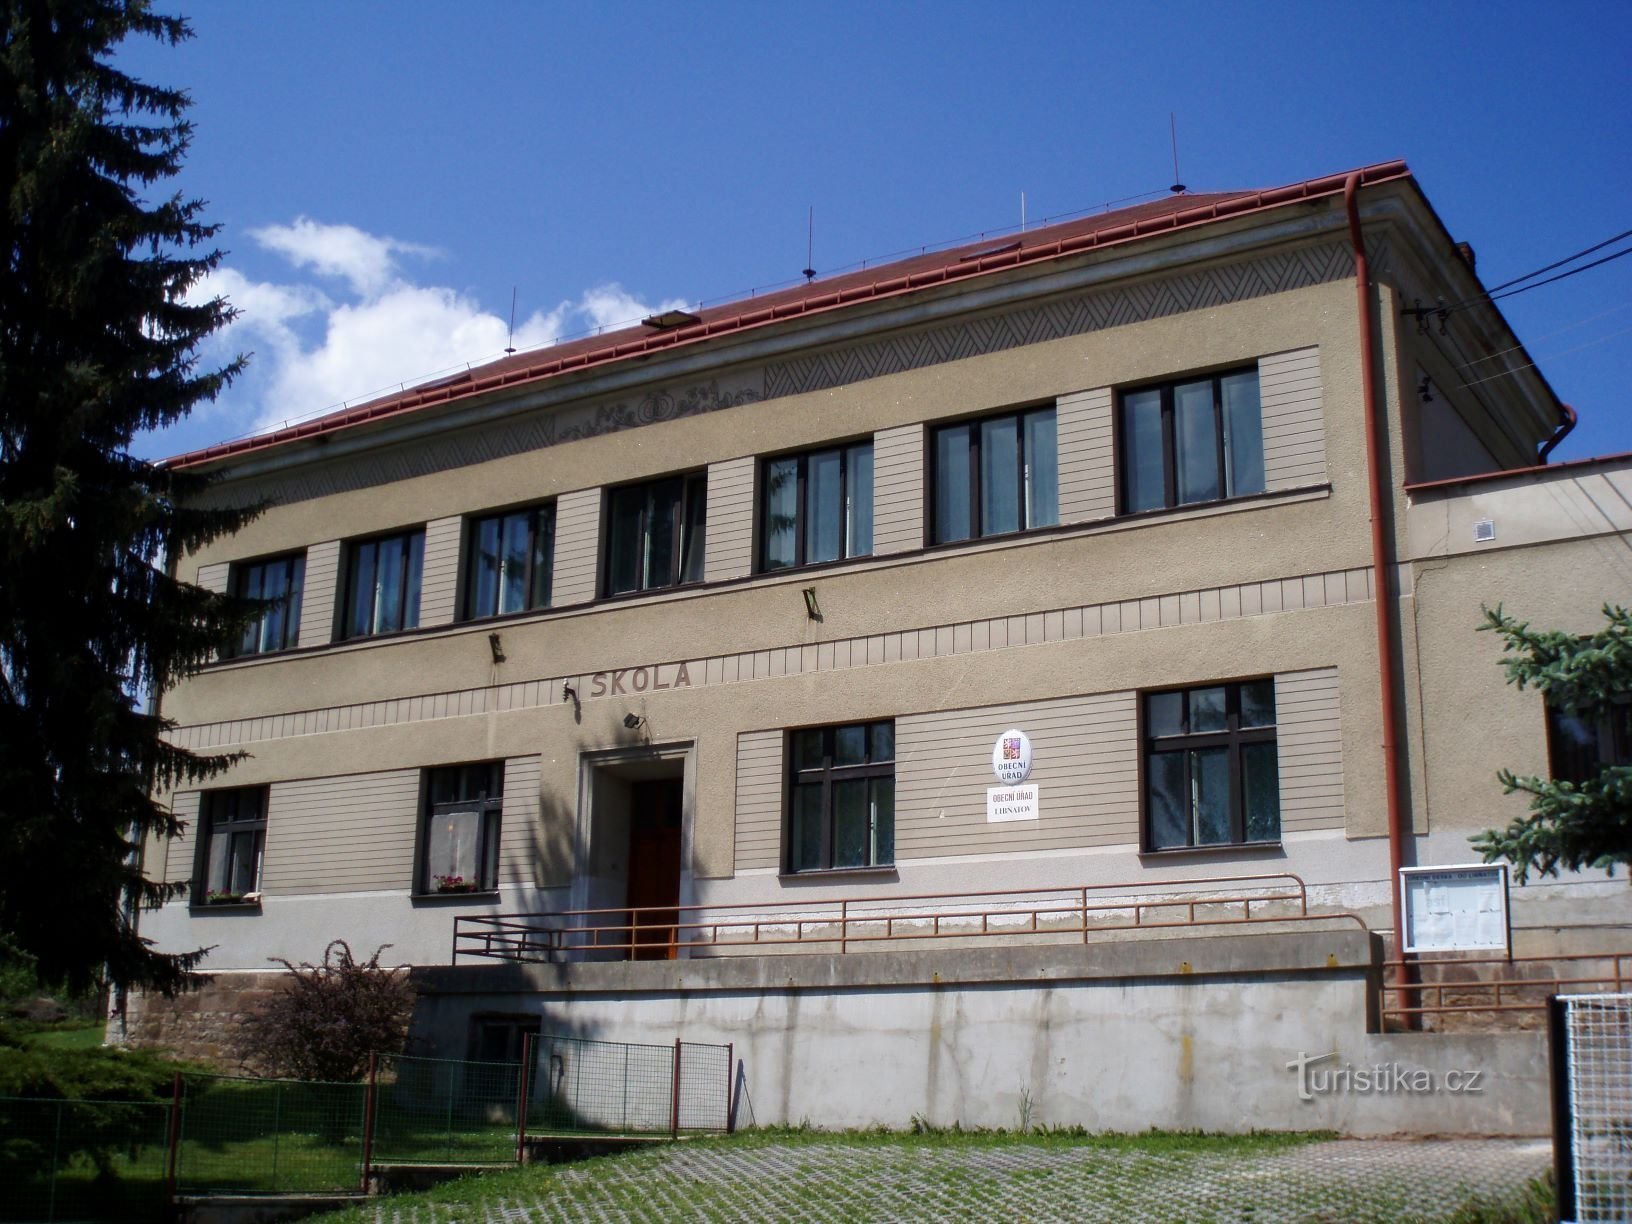 Det ursprungliga utseendet på dagens kommunkontor (Libňatov, 12.5.2009/XNUMX/XNUMX)